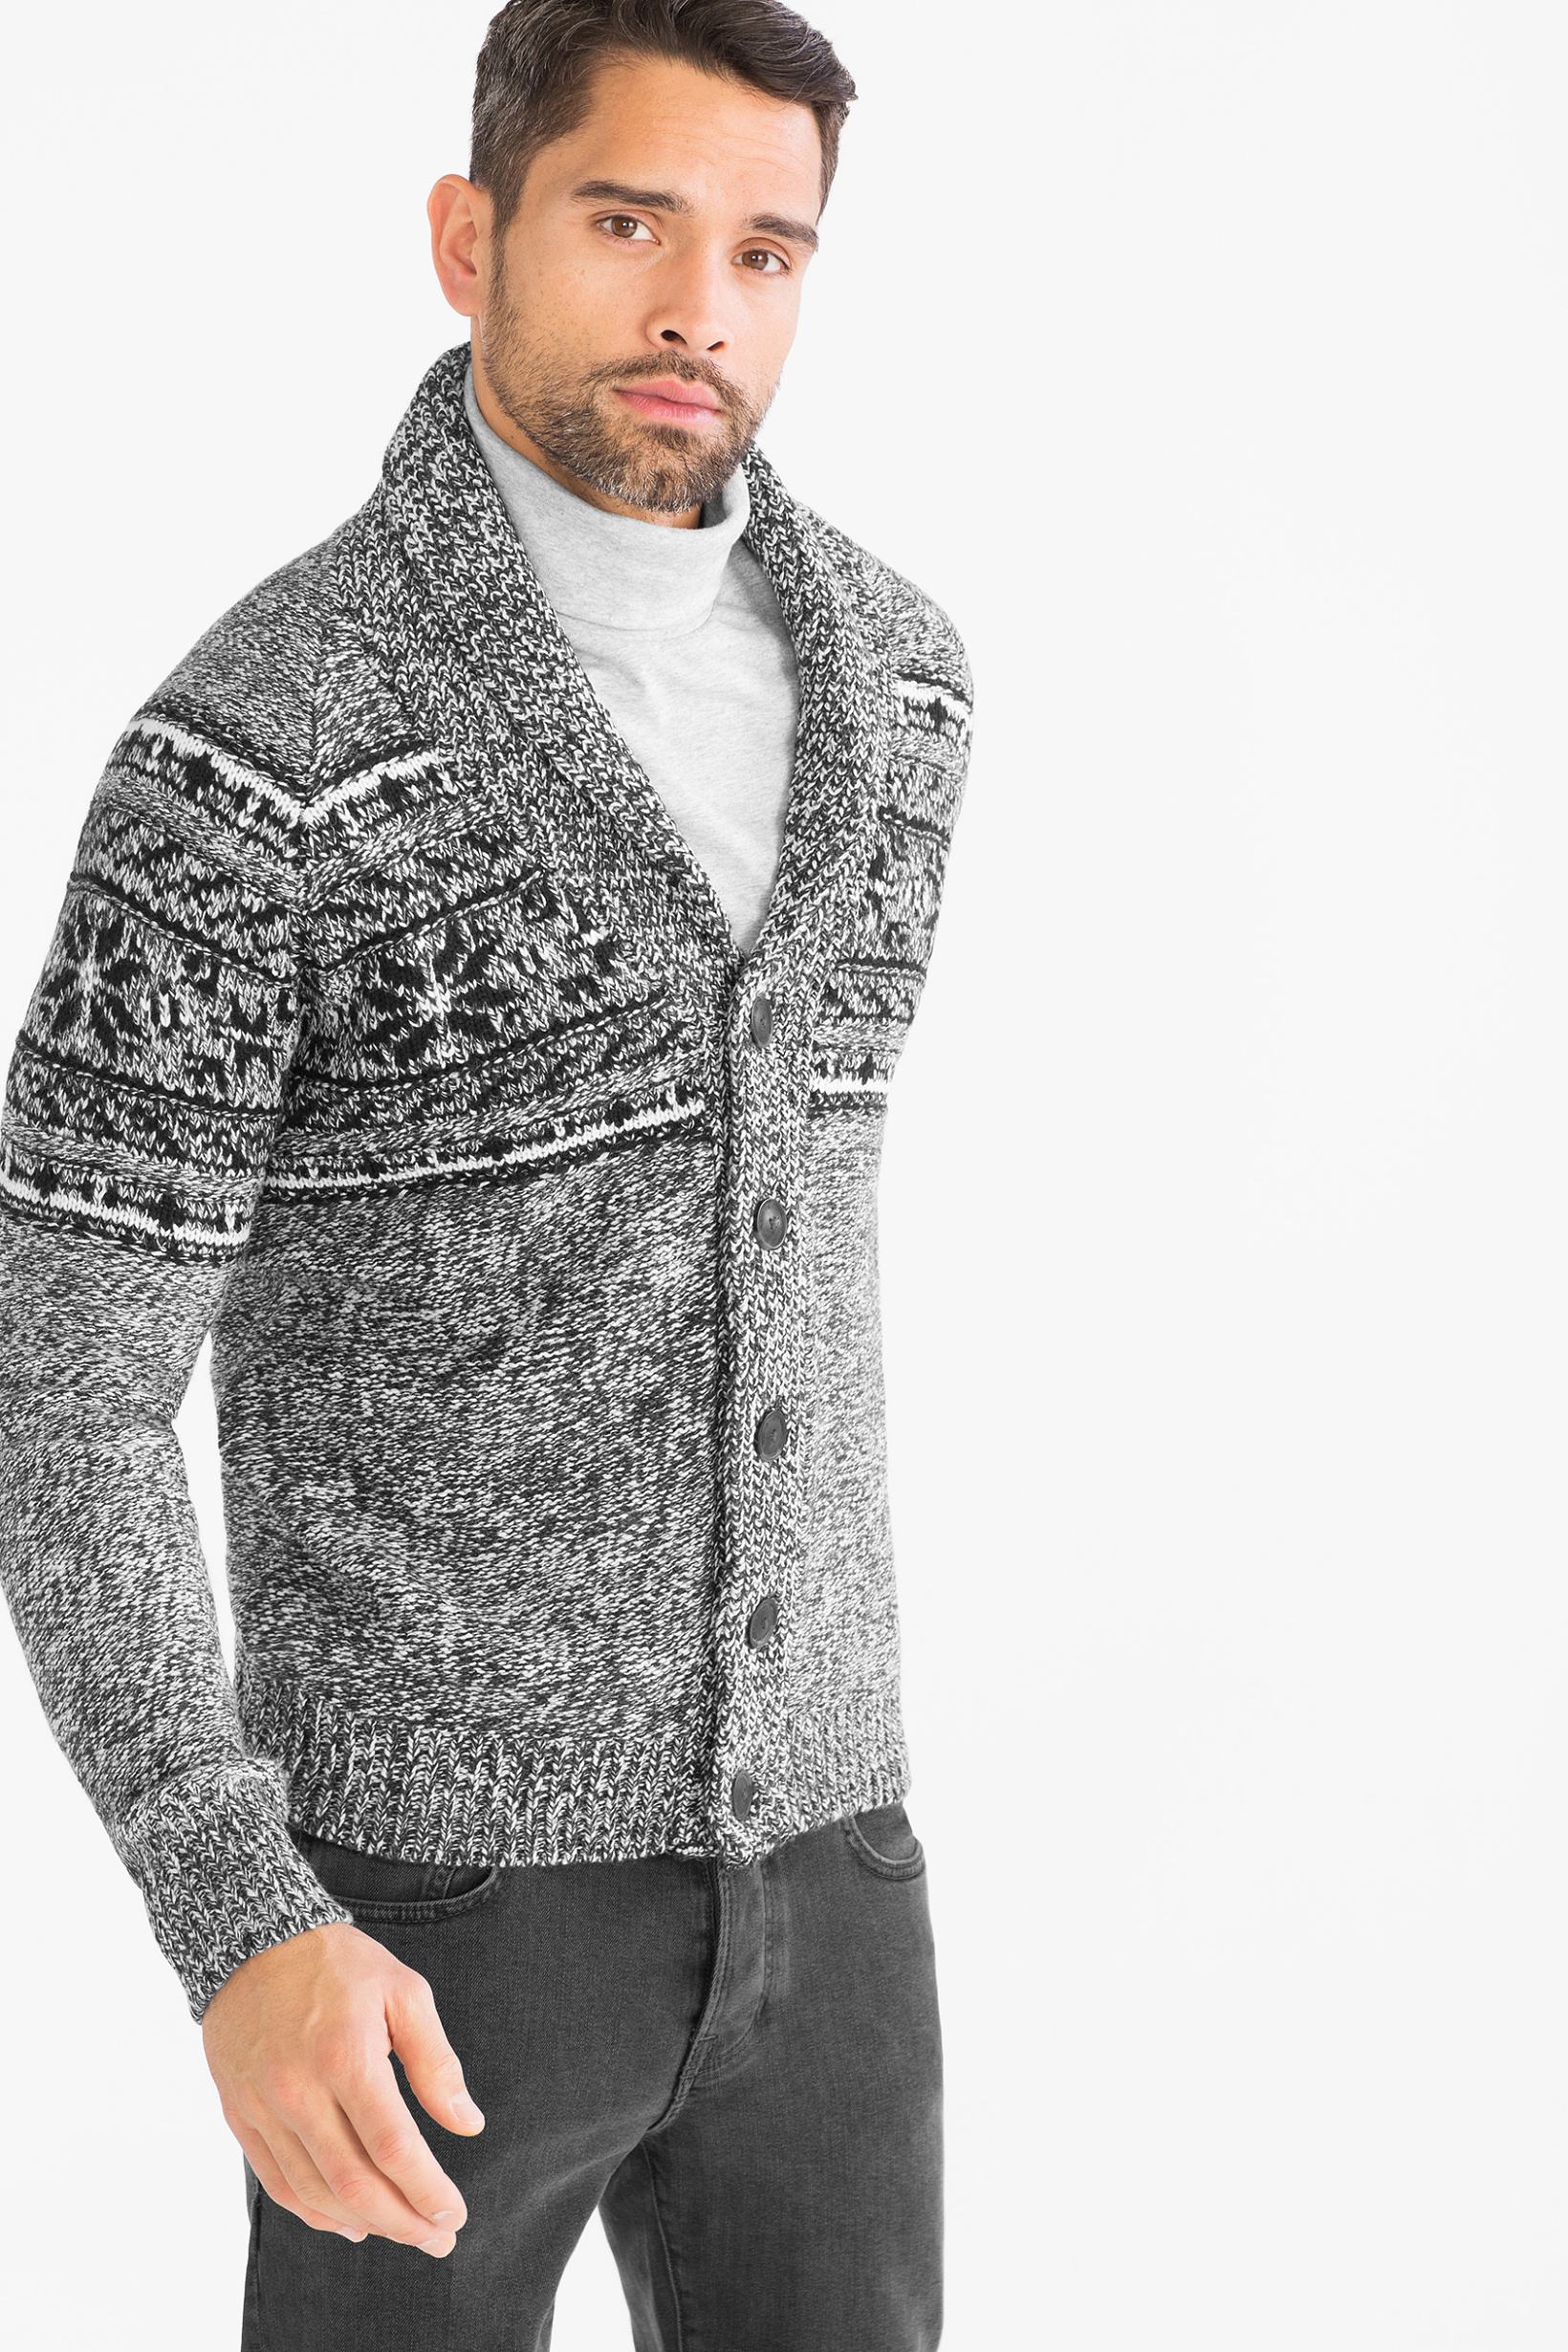 Heerlijk genoeg Dicht ▷ Angelo litrico vest kopen? | Online Internetwinkel